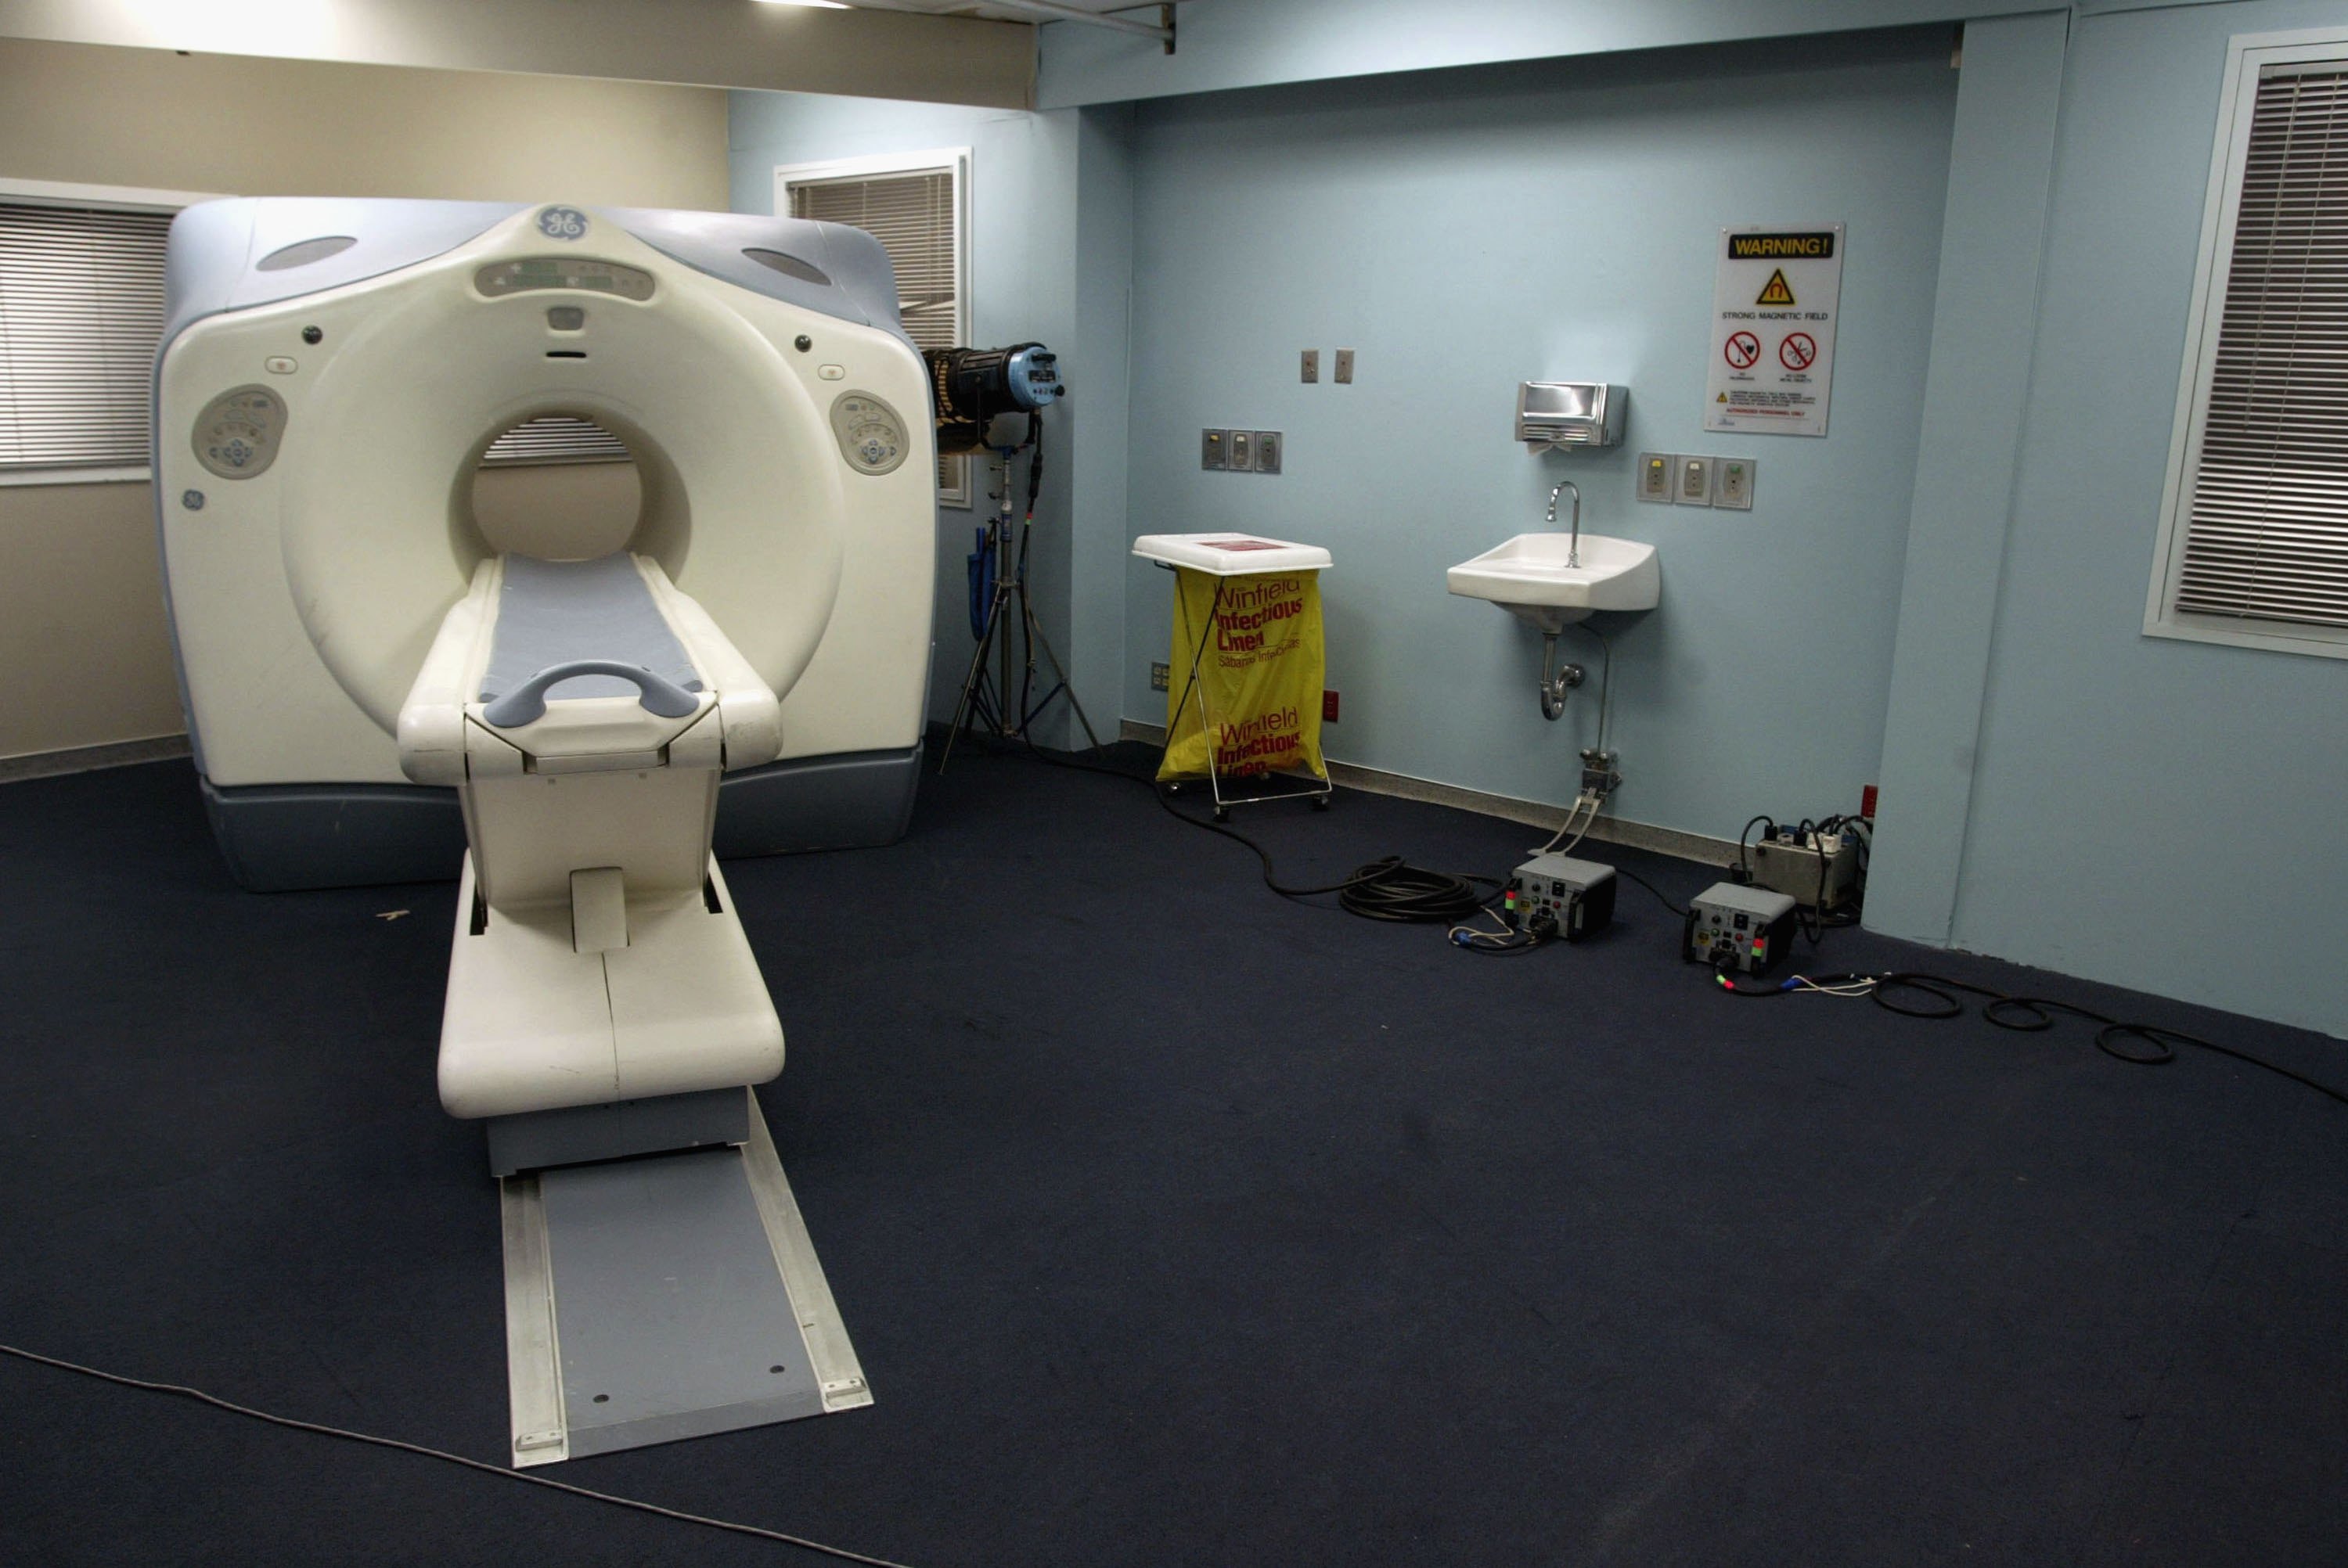 Egy indiai férfi beragadt az MRI-gépbe, és meghalt